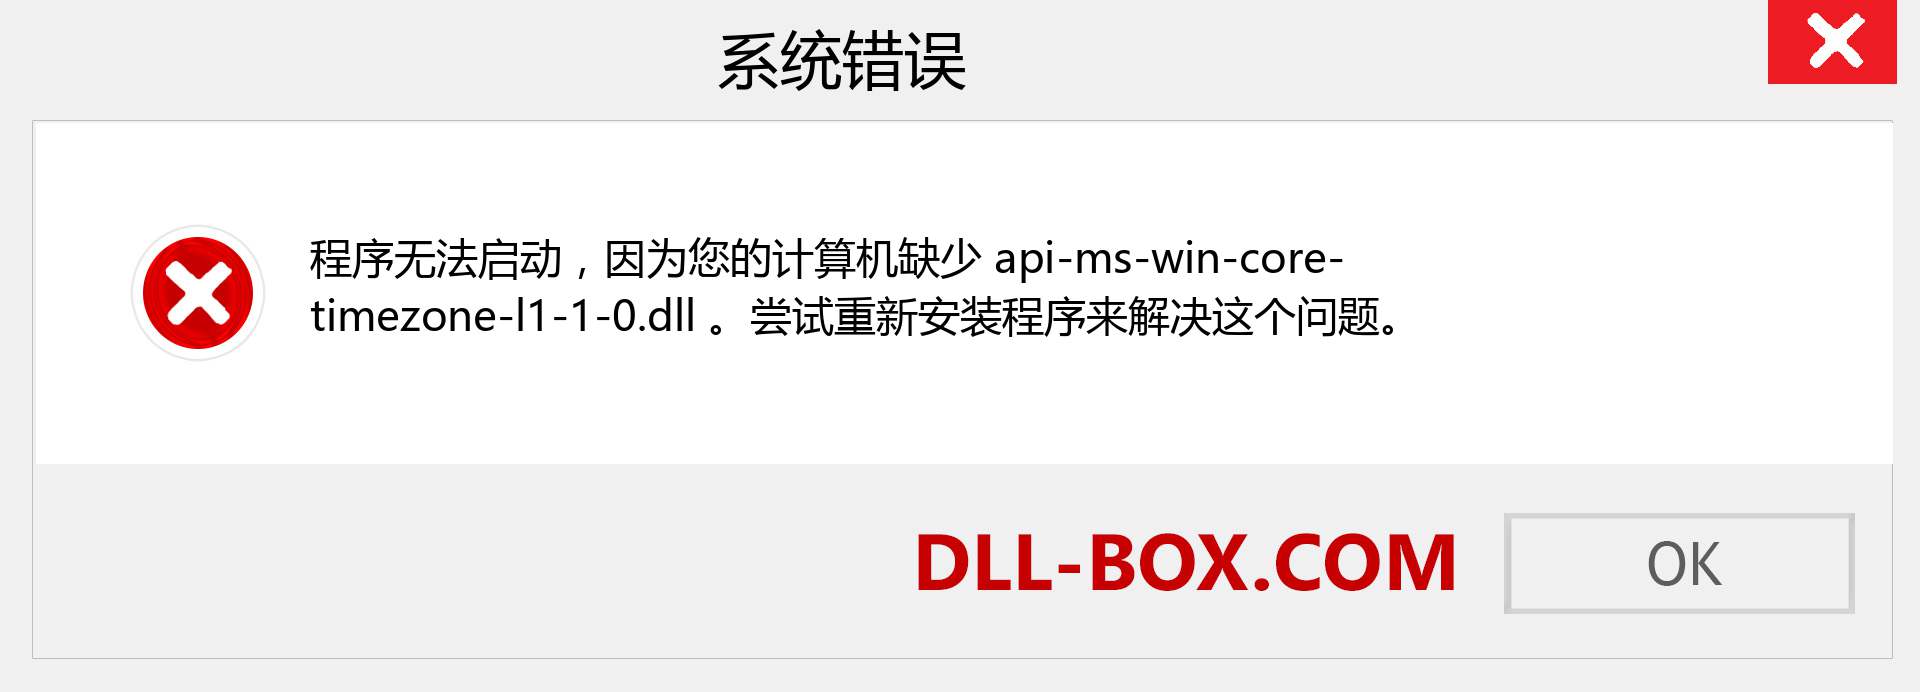 api-ms-win-core-timezone-l1-1-0.dll 文件丢失？。 适用于 Windows 7、8、10 的下载 - 修复 Windows、照片、图像上的 api-ms-win-core-timezone-l1-1-0 dll 丢失错误